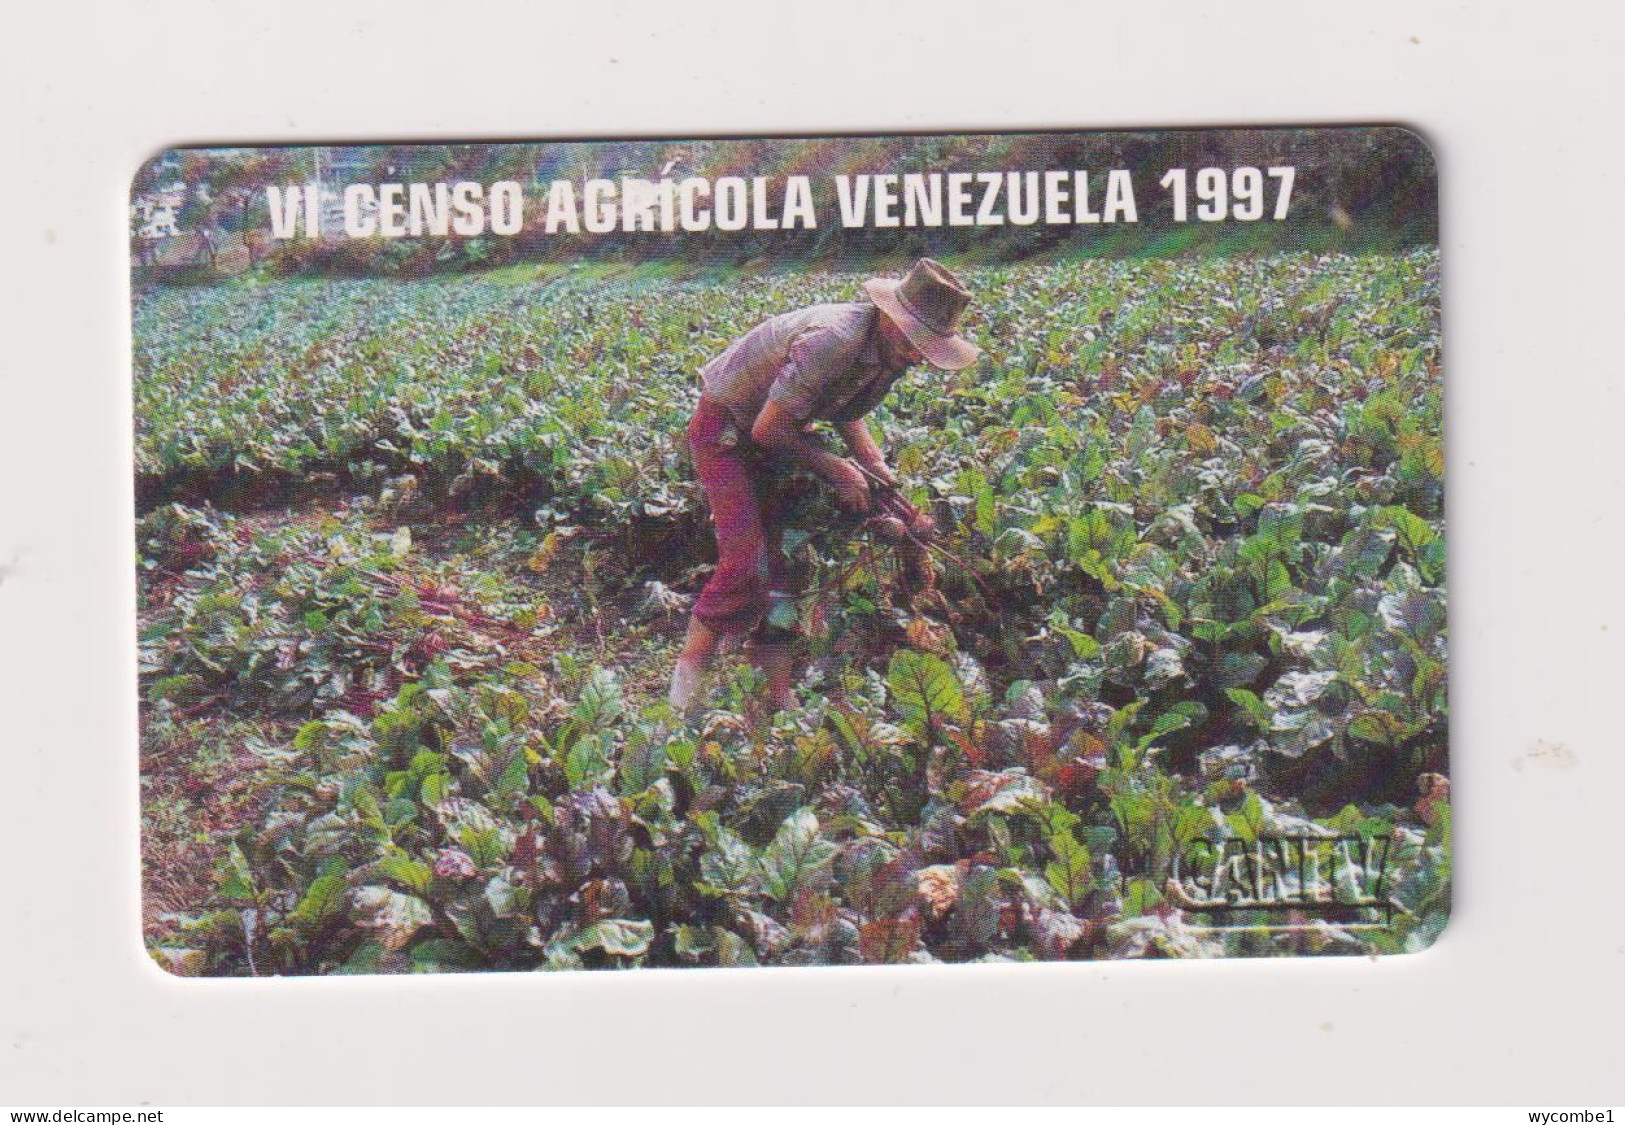 VENEZUELA  -  Agricultural Census Chip Phonecard - Venezuela